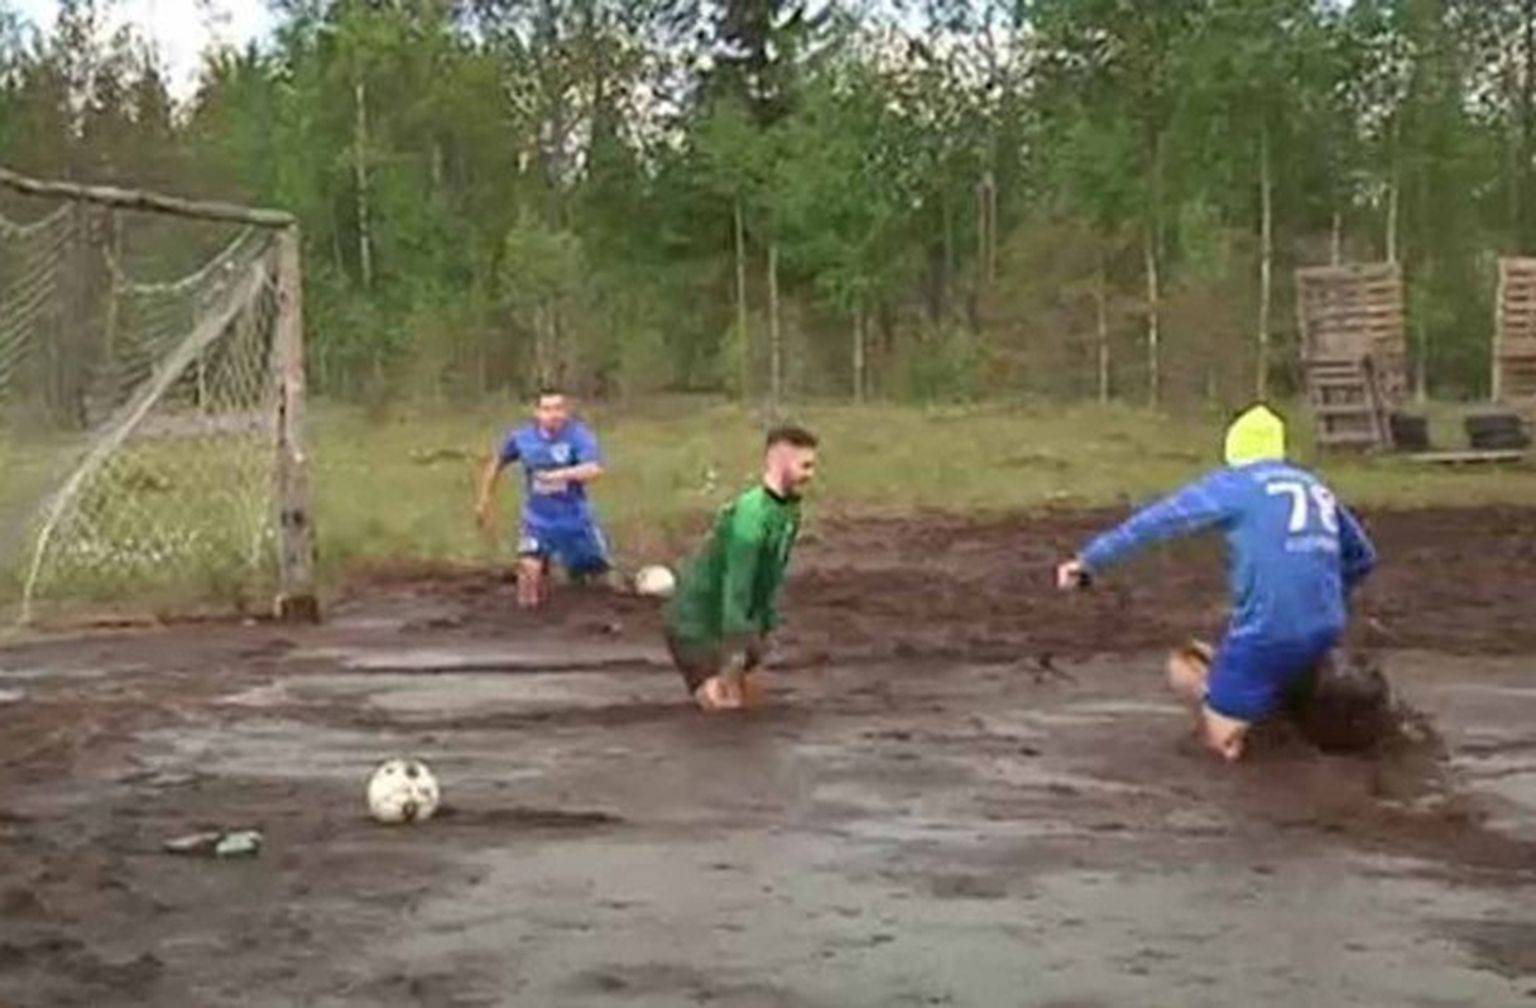 Krievijā futbola entuziasti aizvada maču dubļos